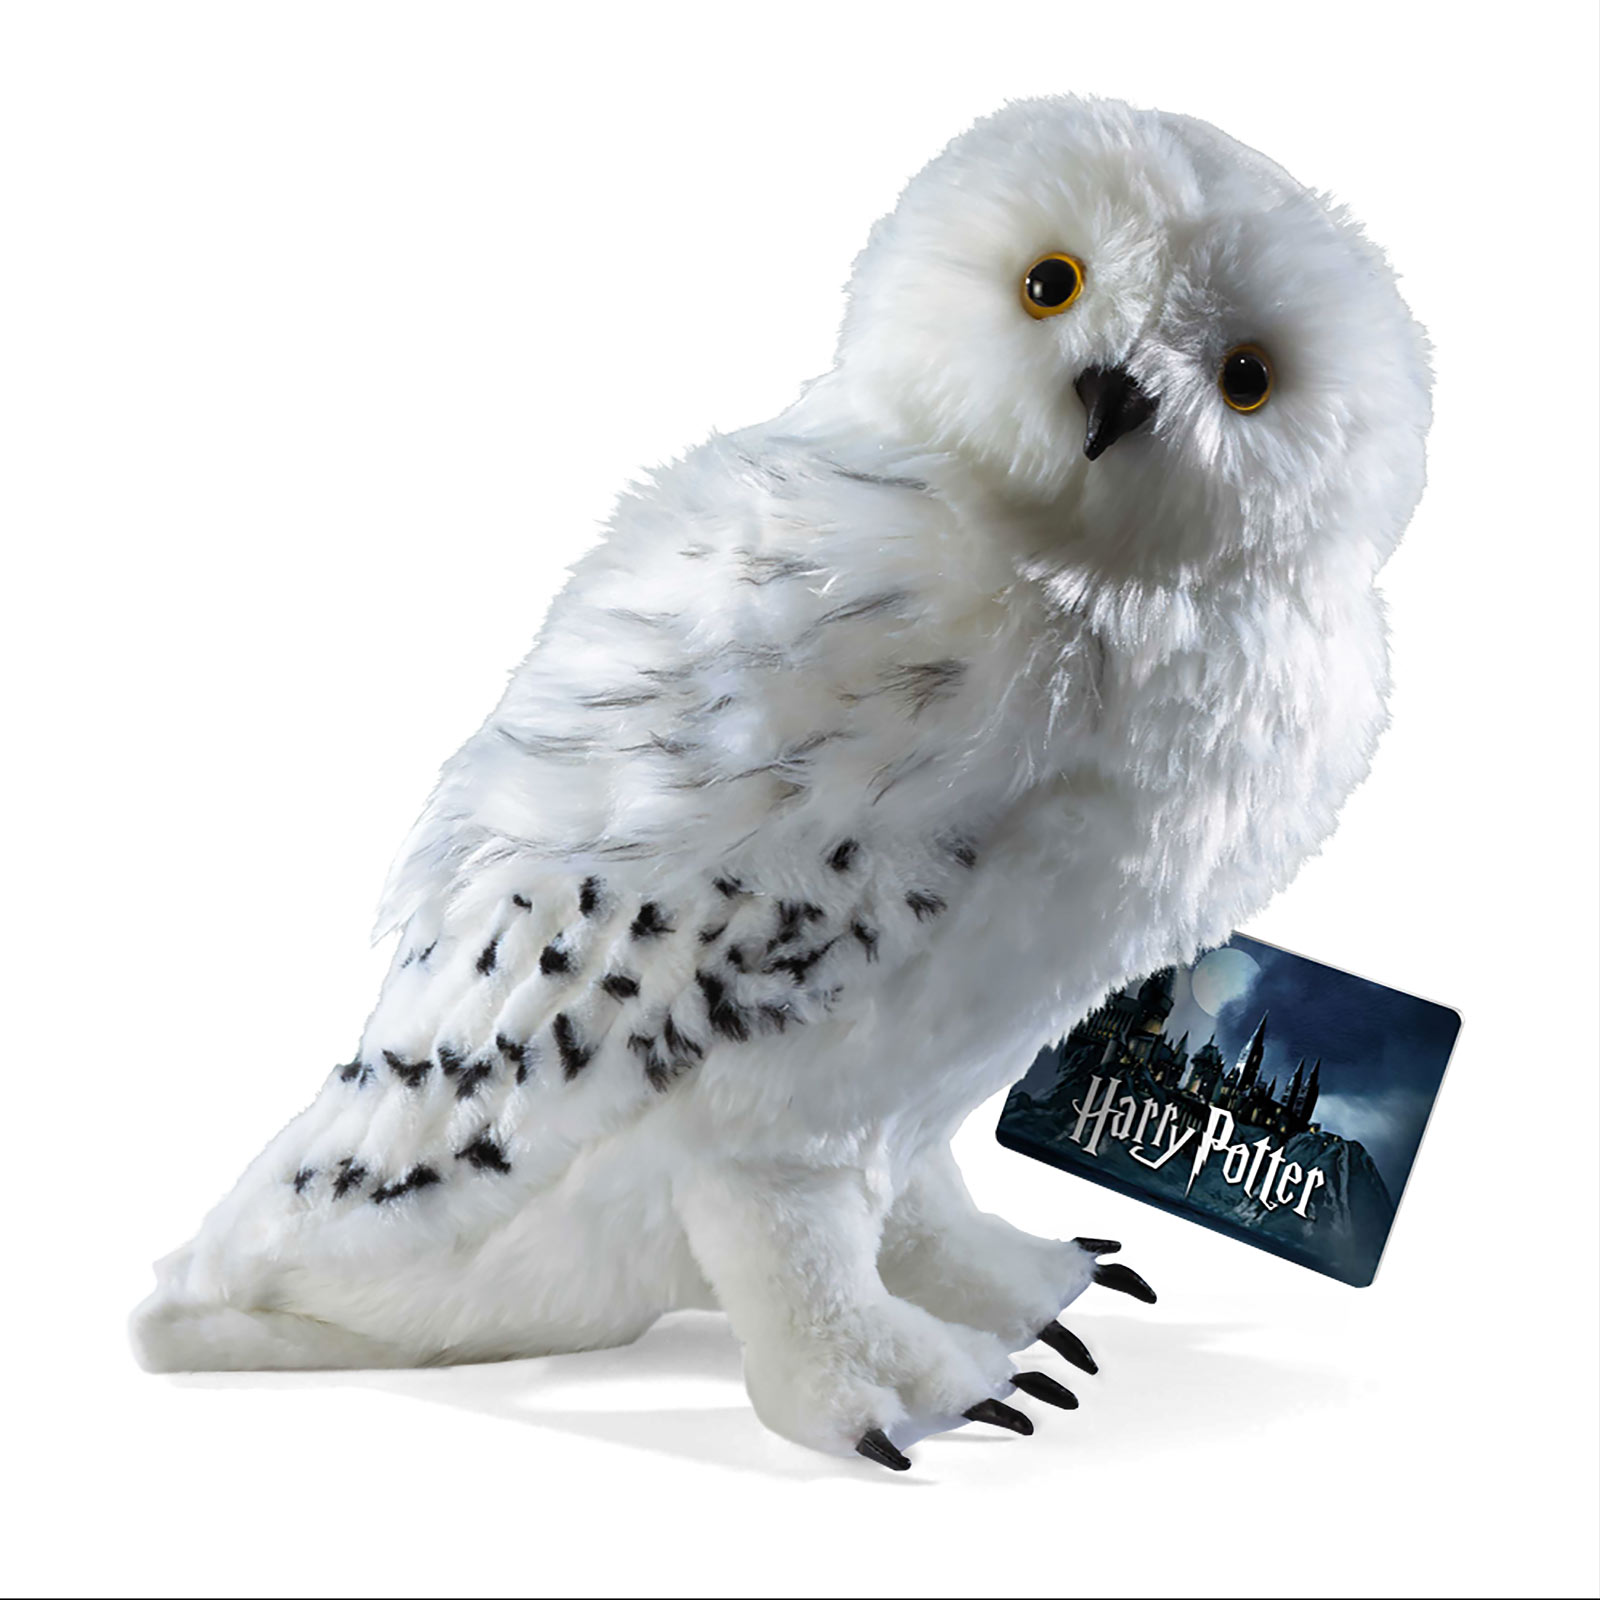 Harry Potter - Hedwig Plüsch Figur